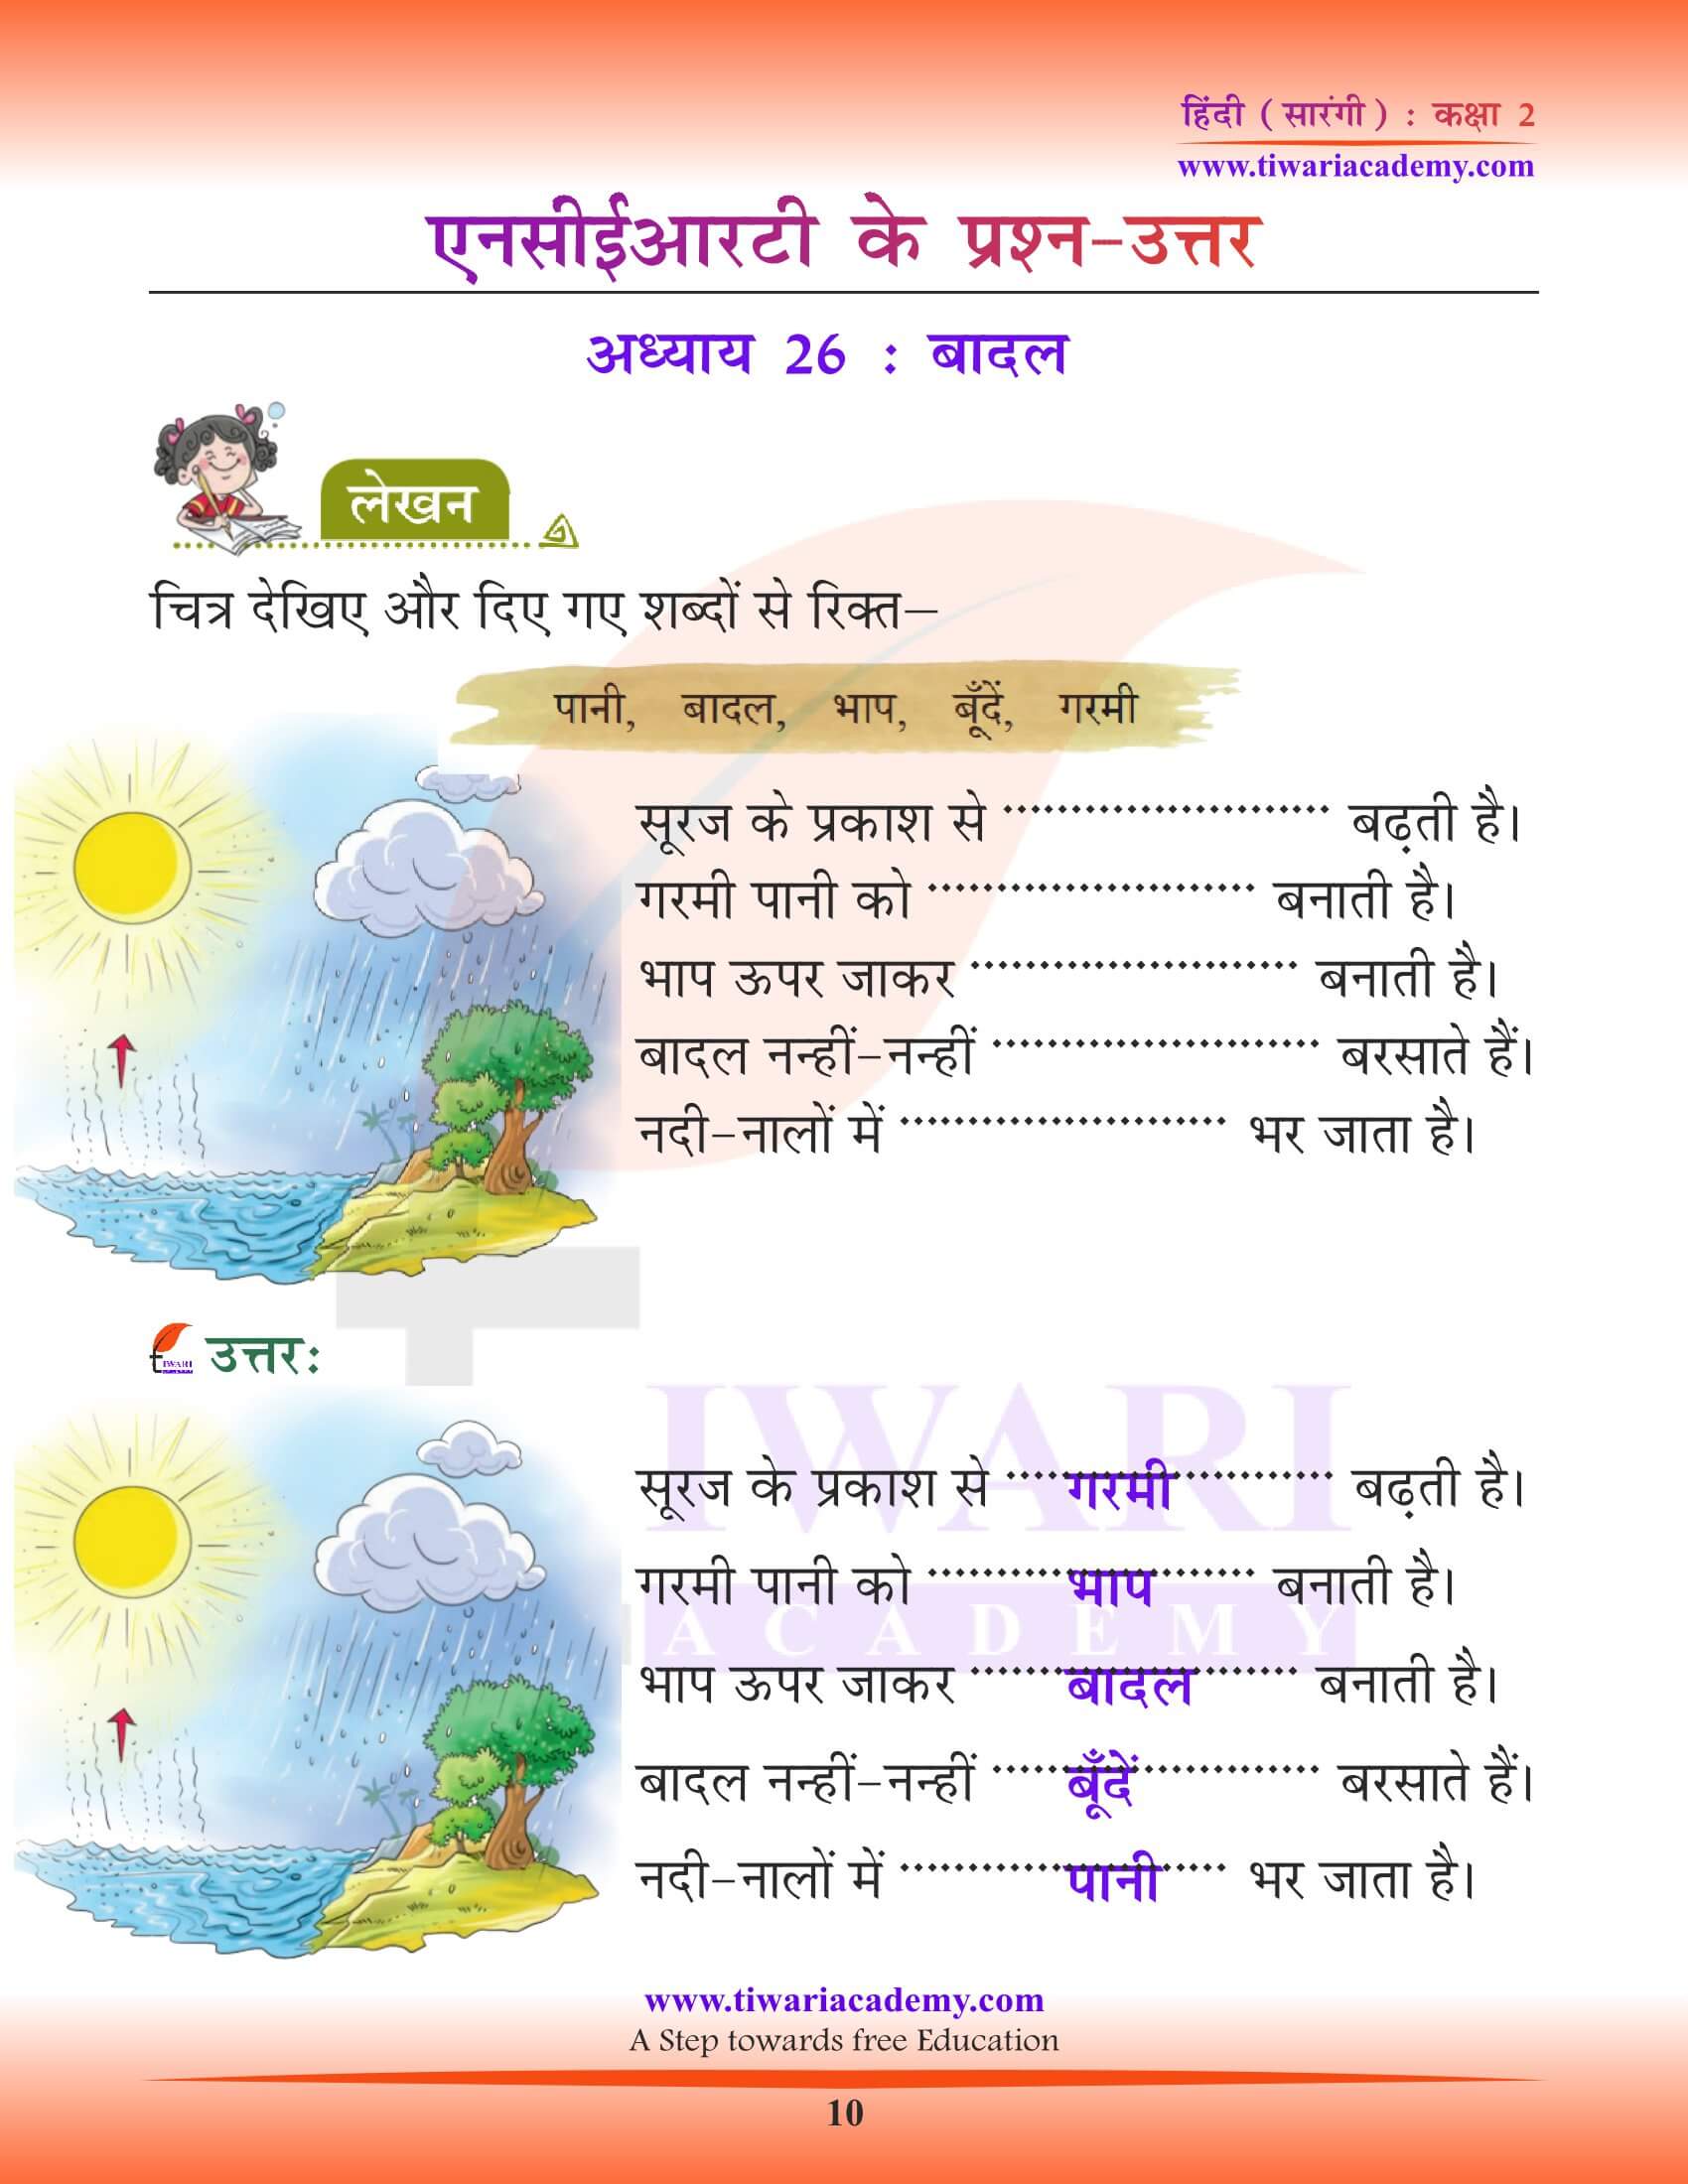 कक्षा 2 हिंदी सारंगी अध्याय 26 के सवाल जवाब